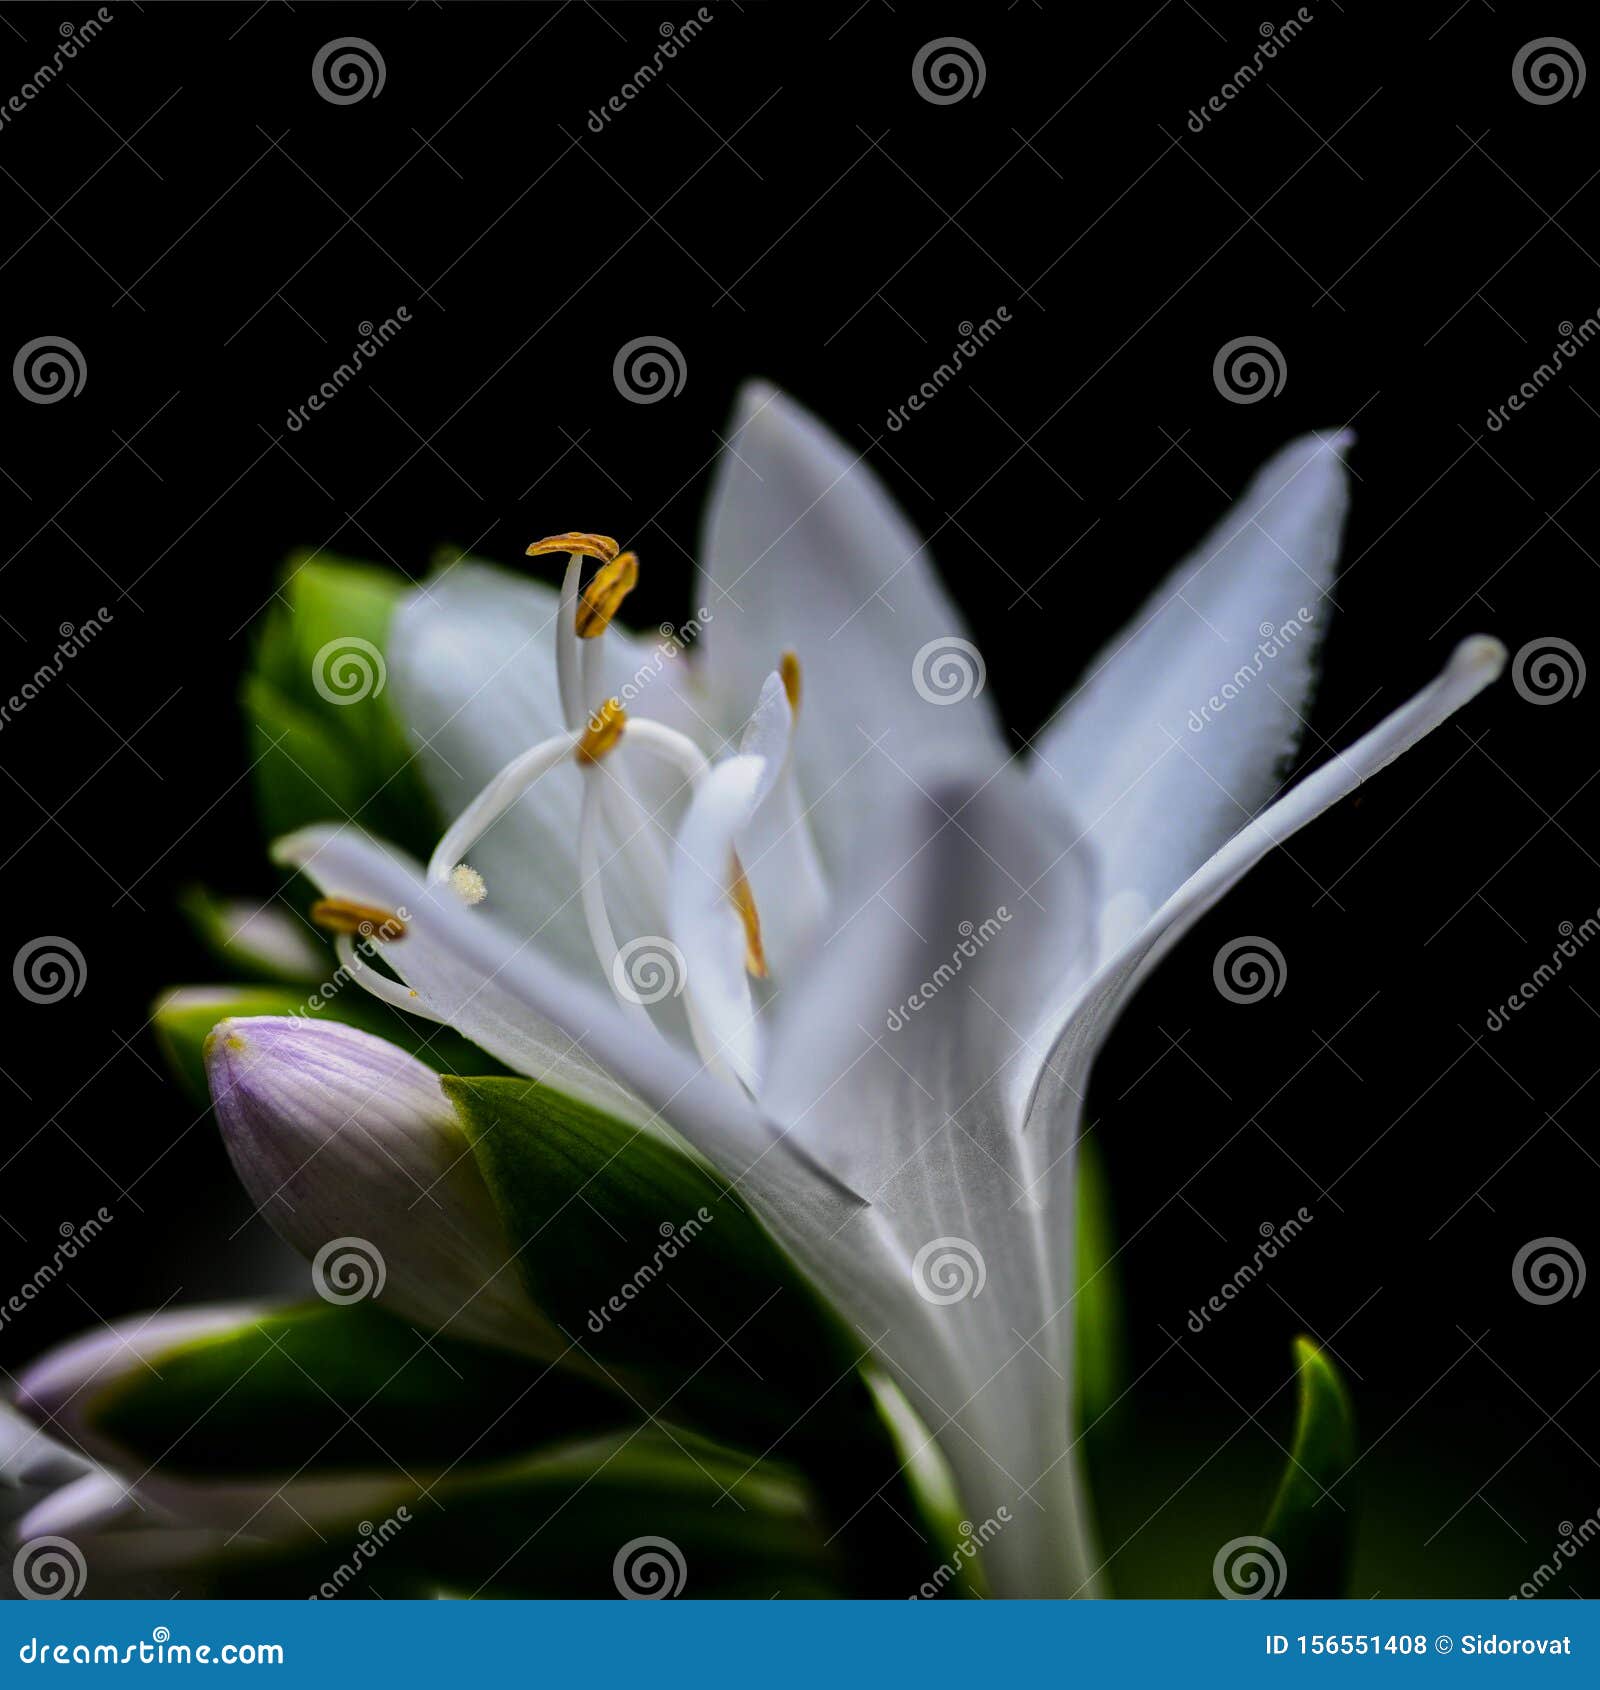 Flor En Forma De Campana Blanca Con Estampado Y Polen Sobre Fondo Negro  Foto de archivo - Imagen de balneario, flor: 156551408